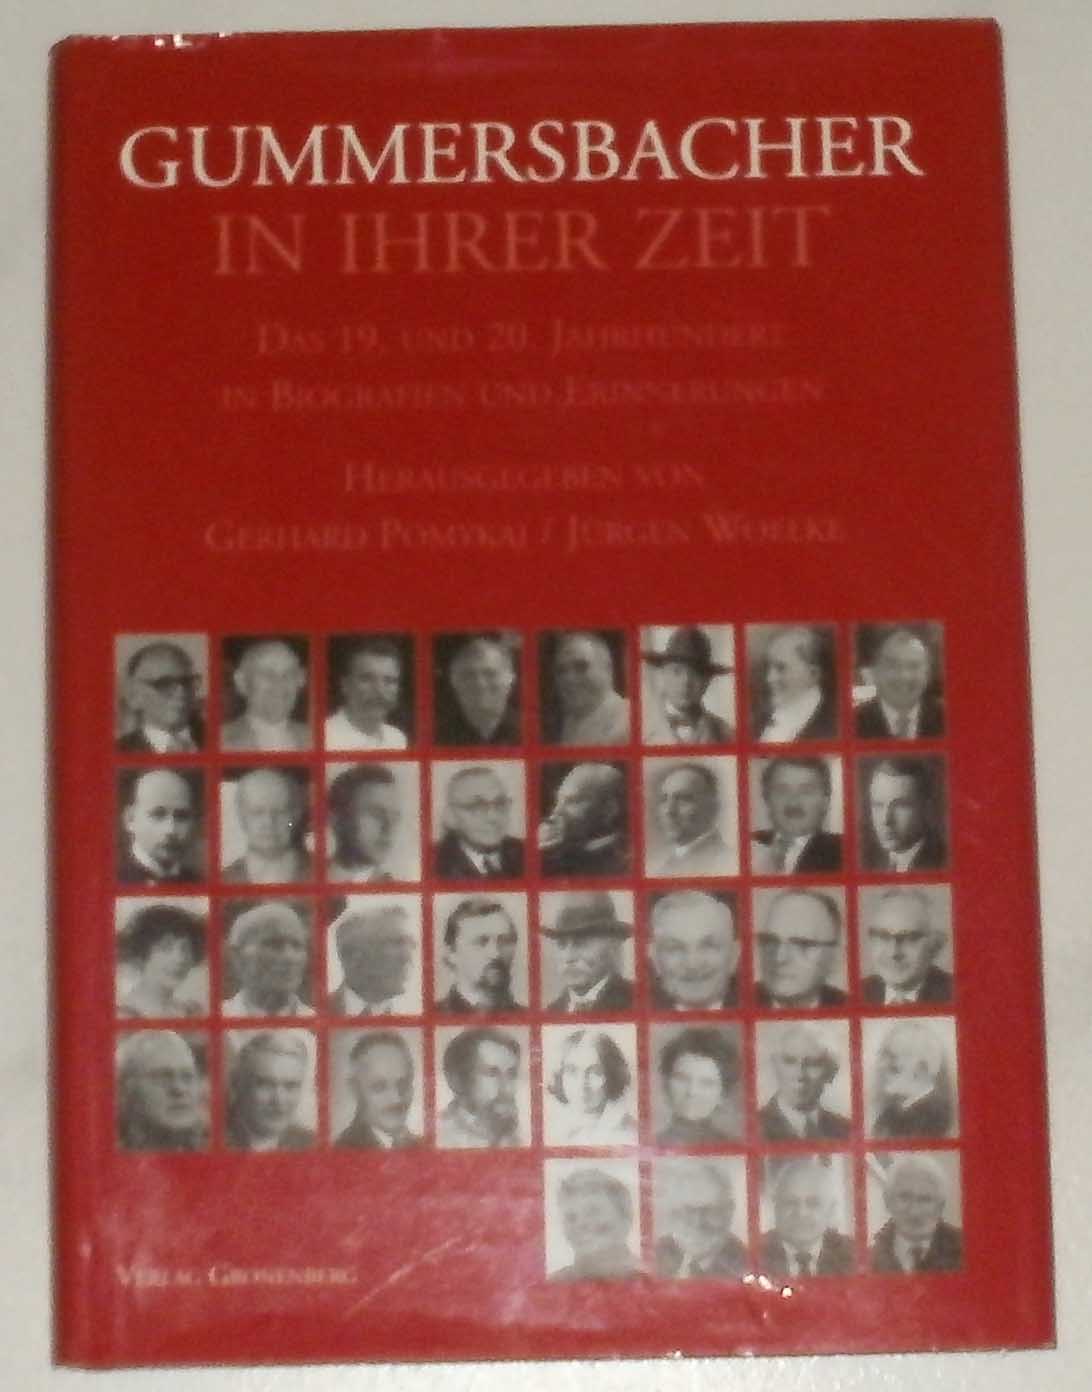 Gummersbacher in ihrer Zeit (Gummersbacher Geschichte Band III): Das 19. und 20. Jahrhundert in Biografien und Erinnerungen